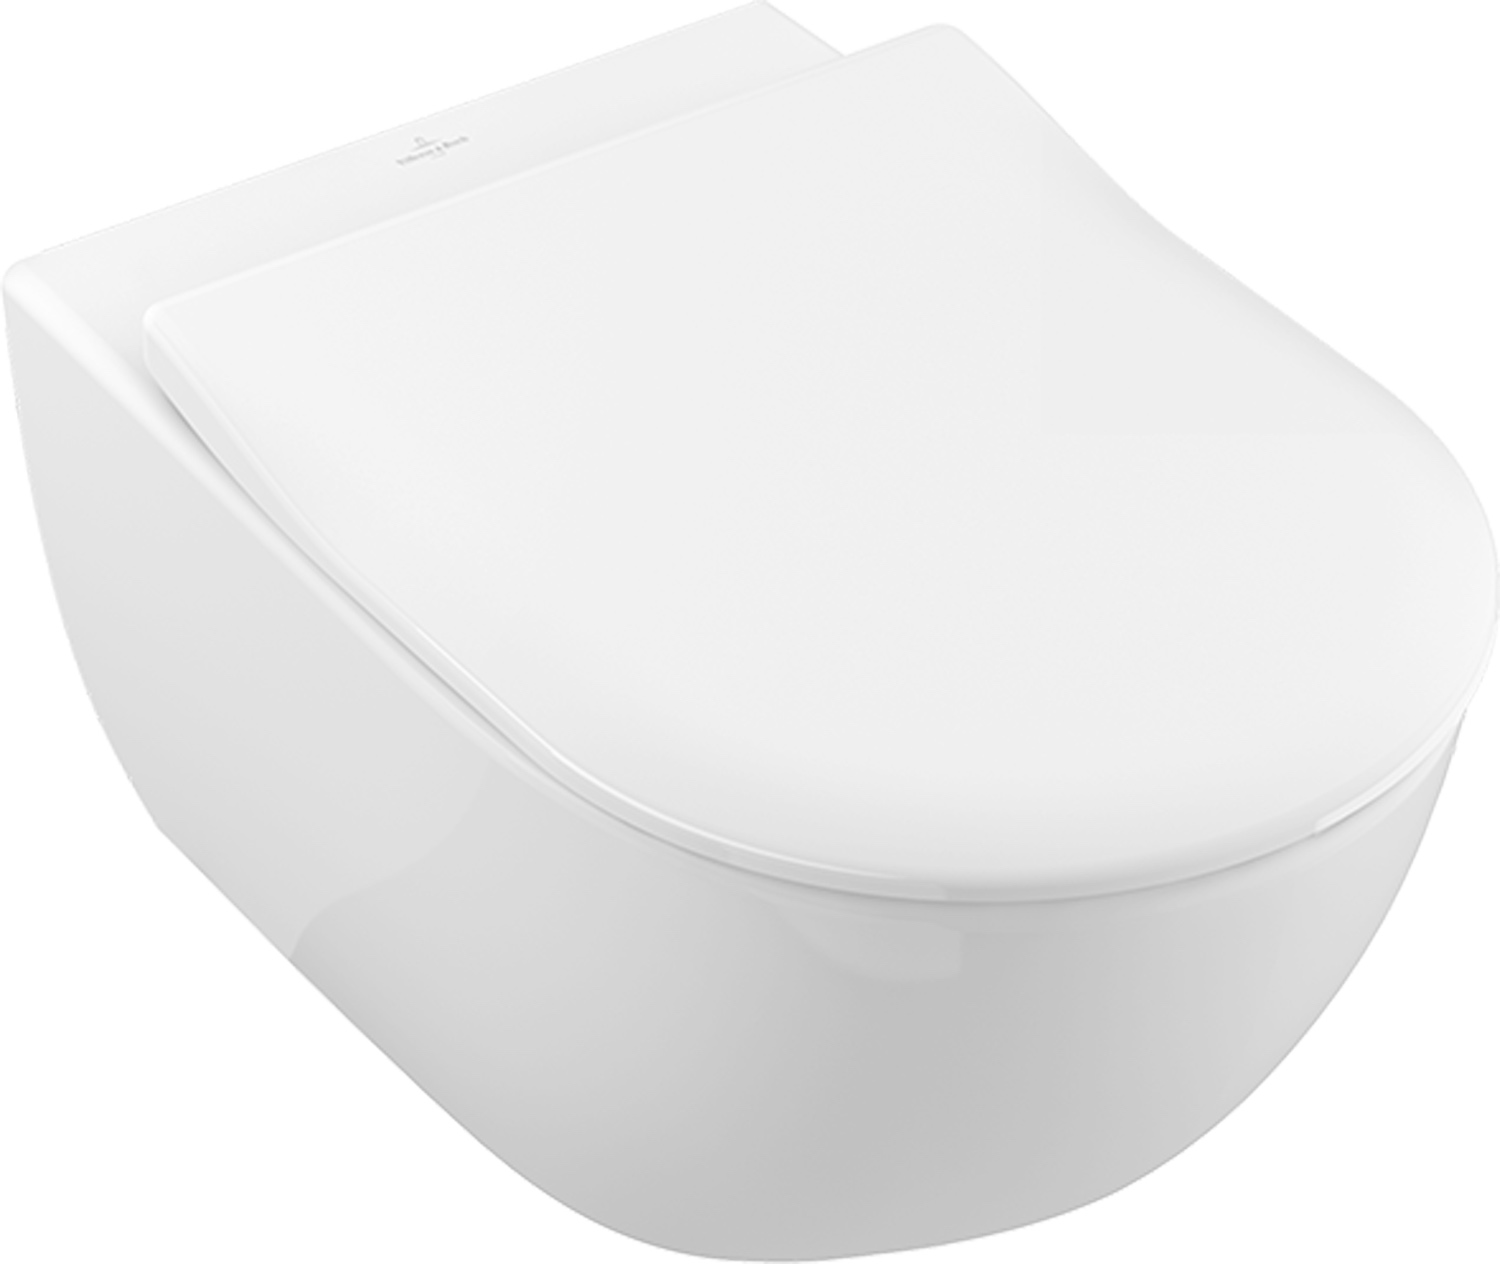 Wand-Tiefspül-WC „Subway 2.0“ 37,5 × 36 × 56,5 cm mit CeramicPlus, mit Spülrand